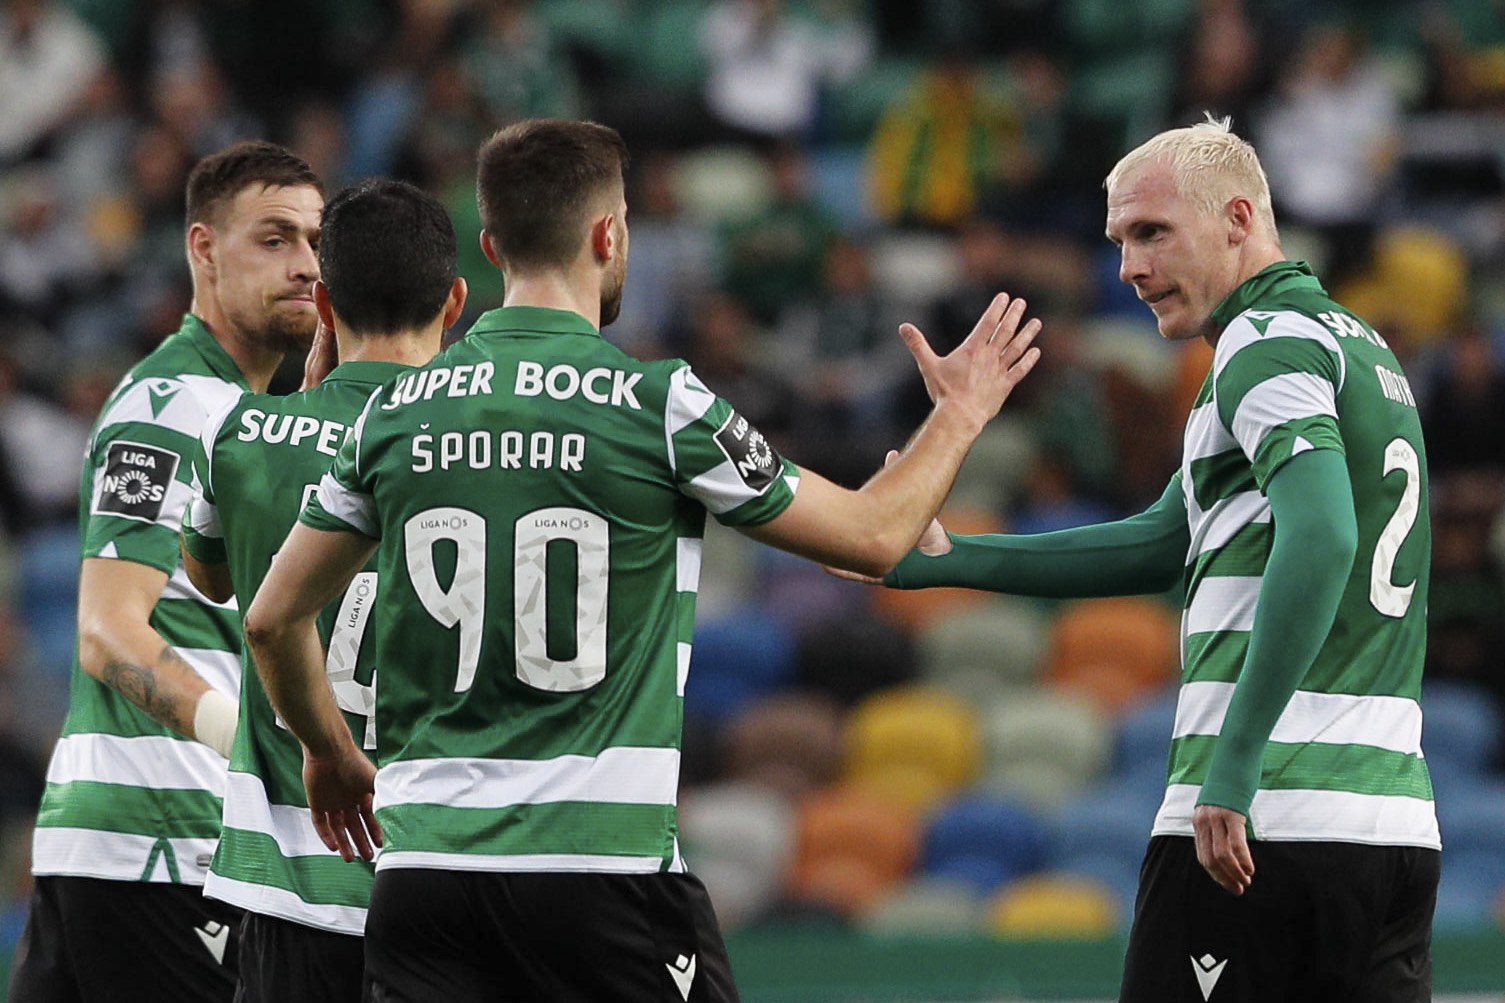 Futebol: Sporting CP na liderança da Liga Portuguesa